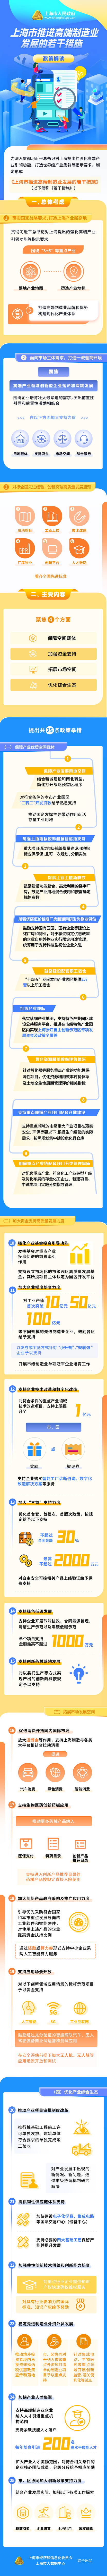 《上海市推进高端制造业发展的若干措施》政策图解.png